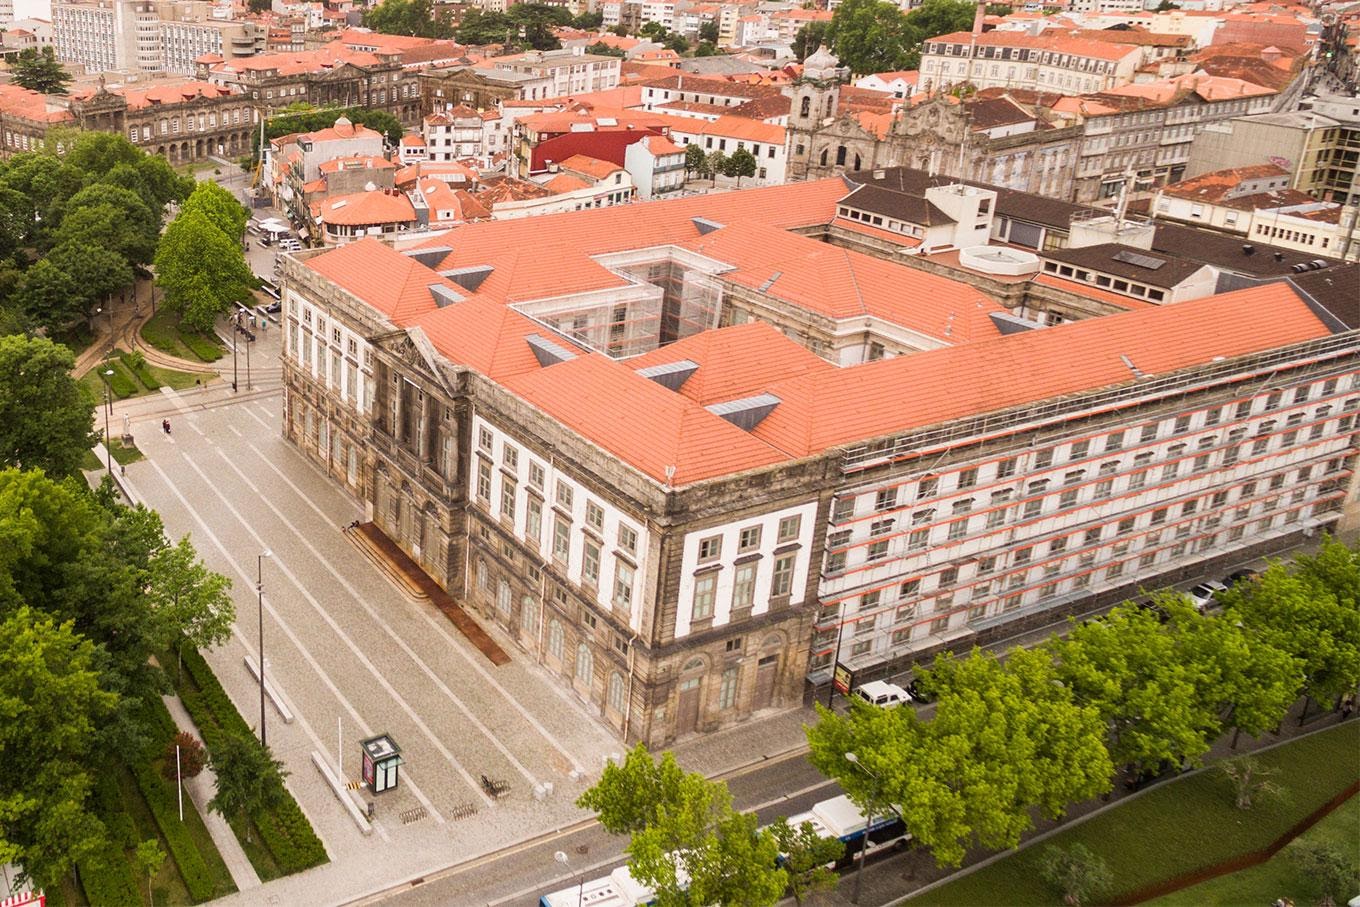 /pt/noticia/post/universidade-do-porto-conheca-uma-das-mais-importantes-instituicoes-de-portugal?display=vivaportugal